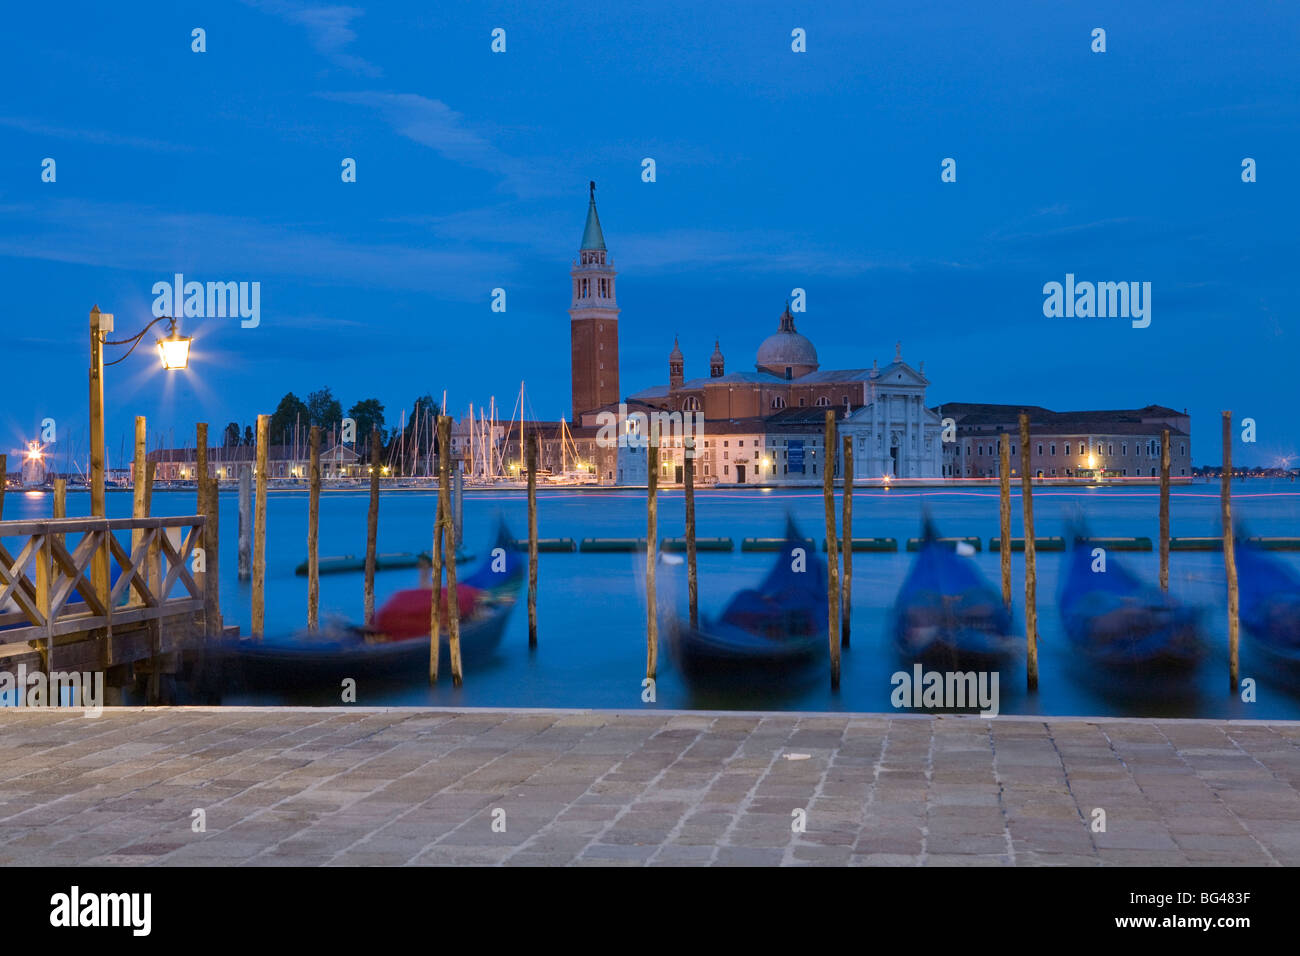 Gondolas, St. Mark's Square, Venice, Italy Stock Photo